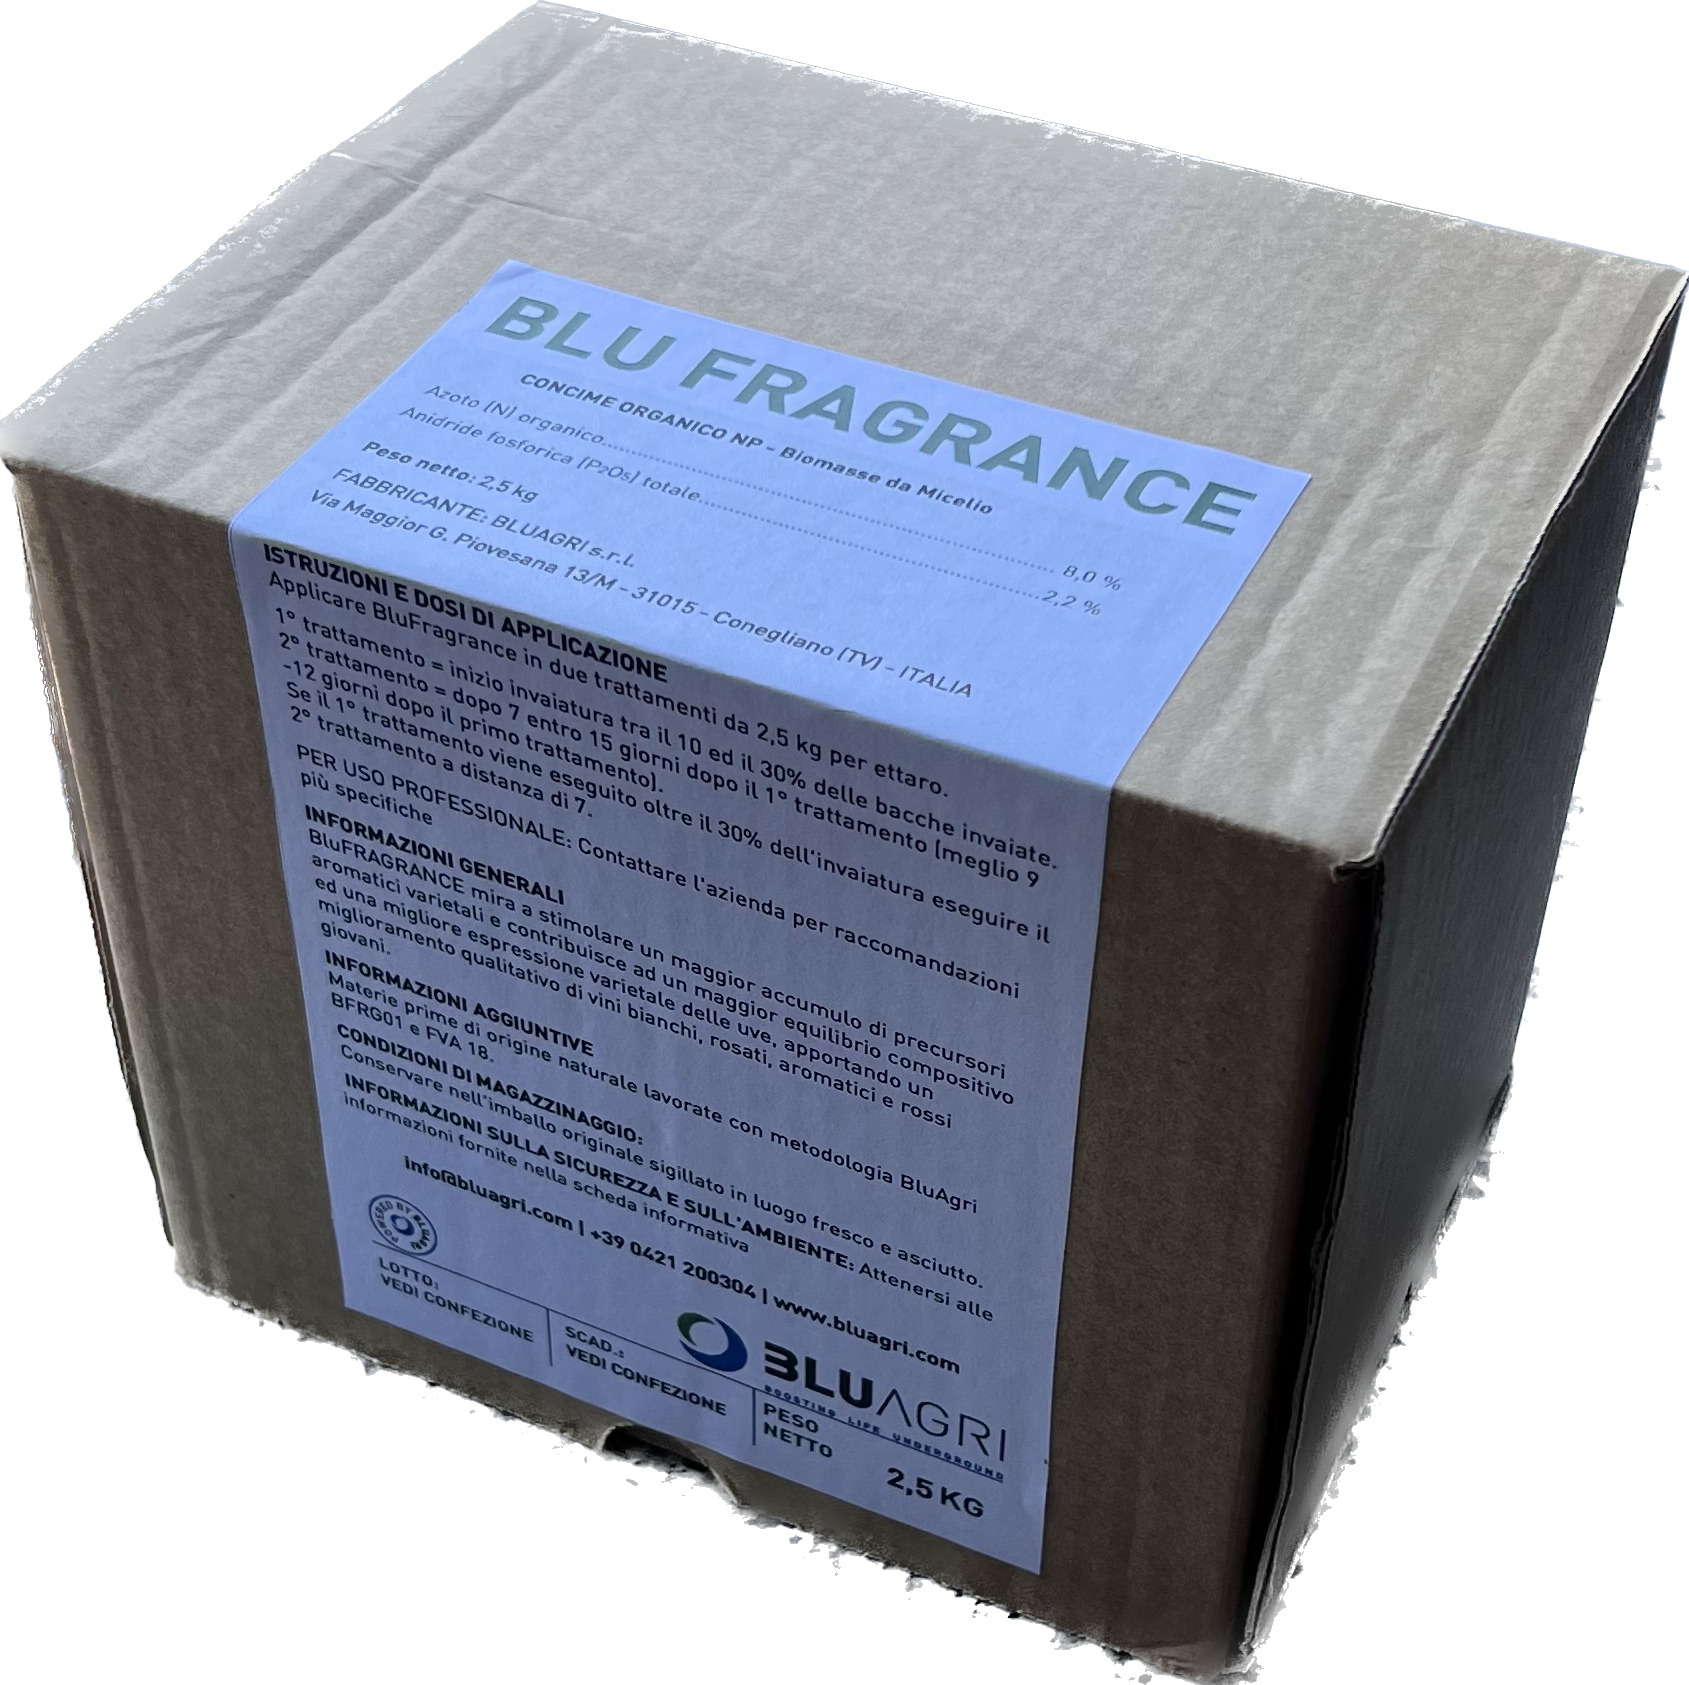 Blu Fragrance